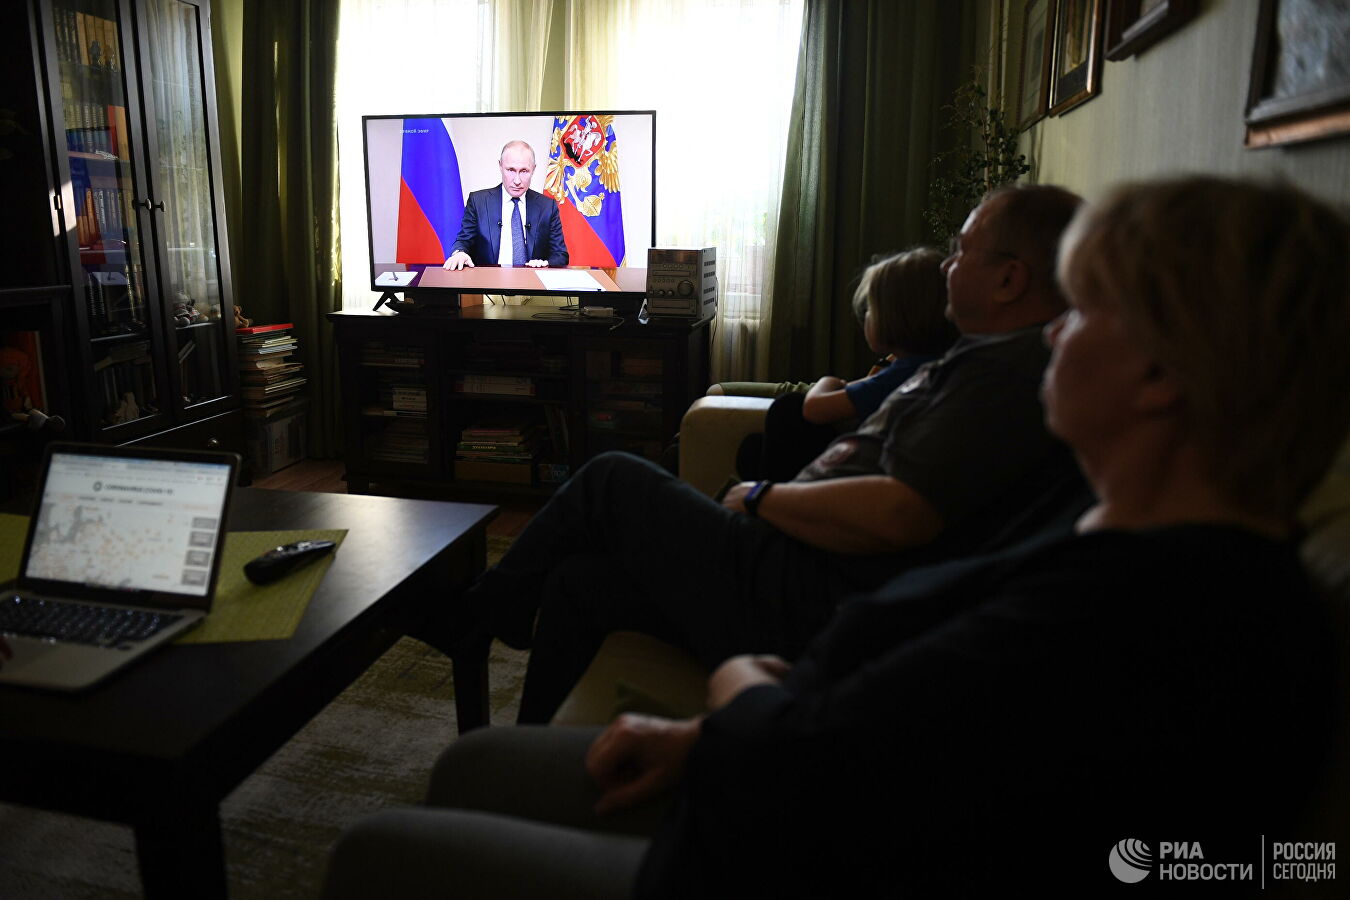 โควิด: รัสเซียหยุดงาน 7 วัน ไม่หักค่าจ้าง "ปูติน" แนะอยู่บ้านปลอดภัยสุด